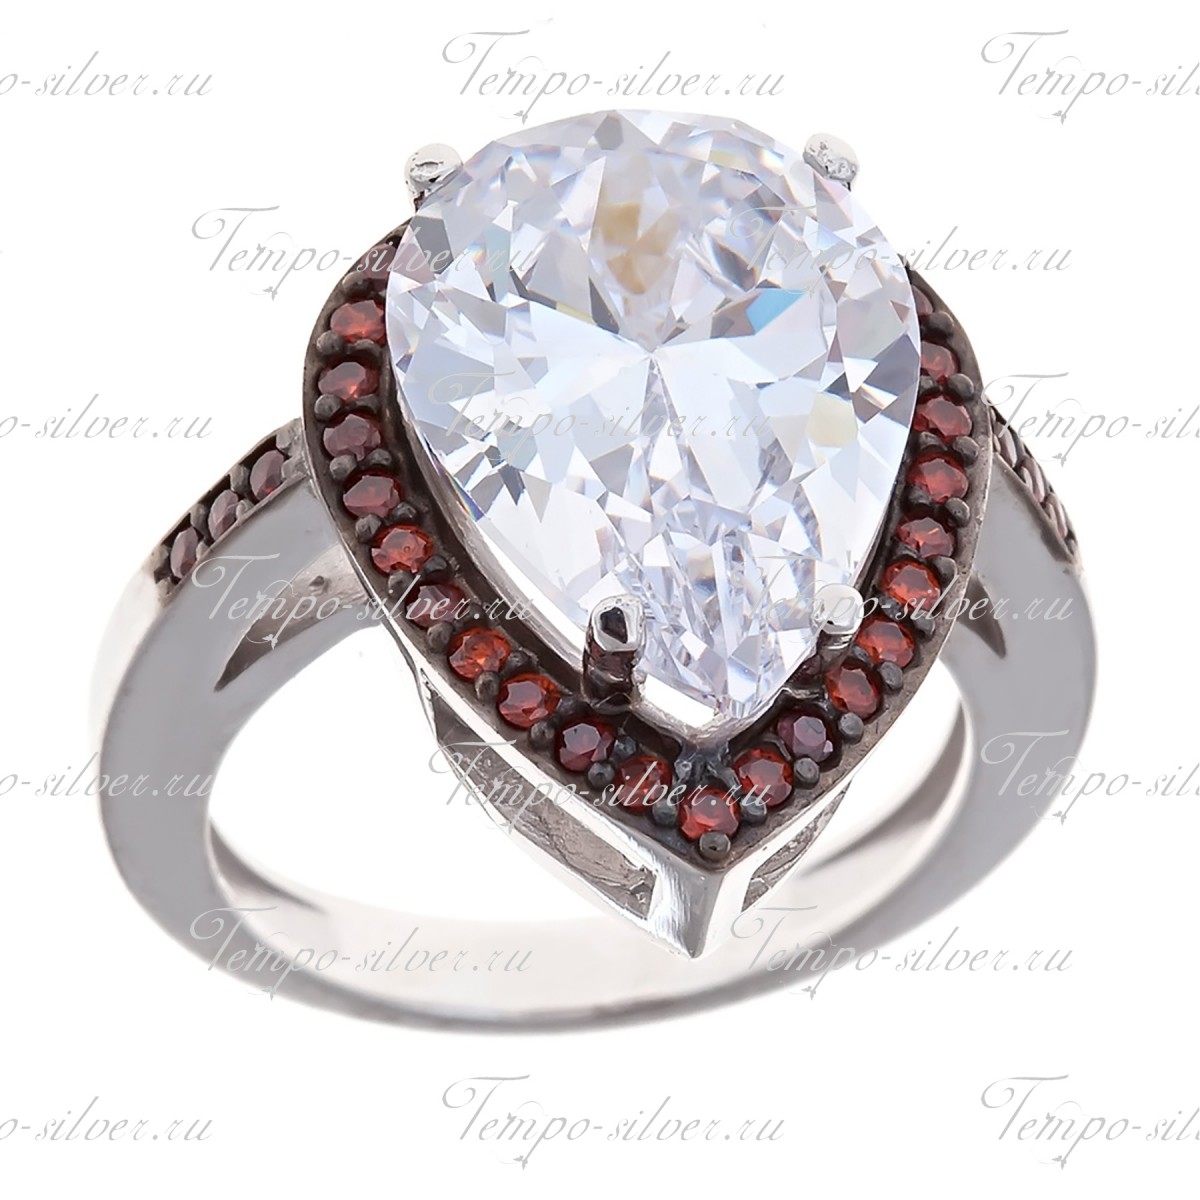 Кольцо серебряное в форме капли с большим камнем и ободком из красных камней цена